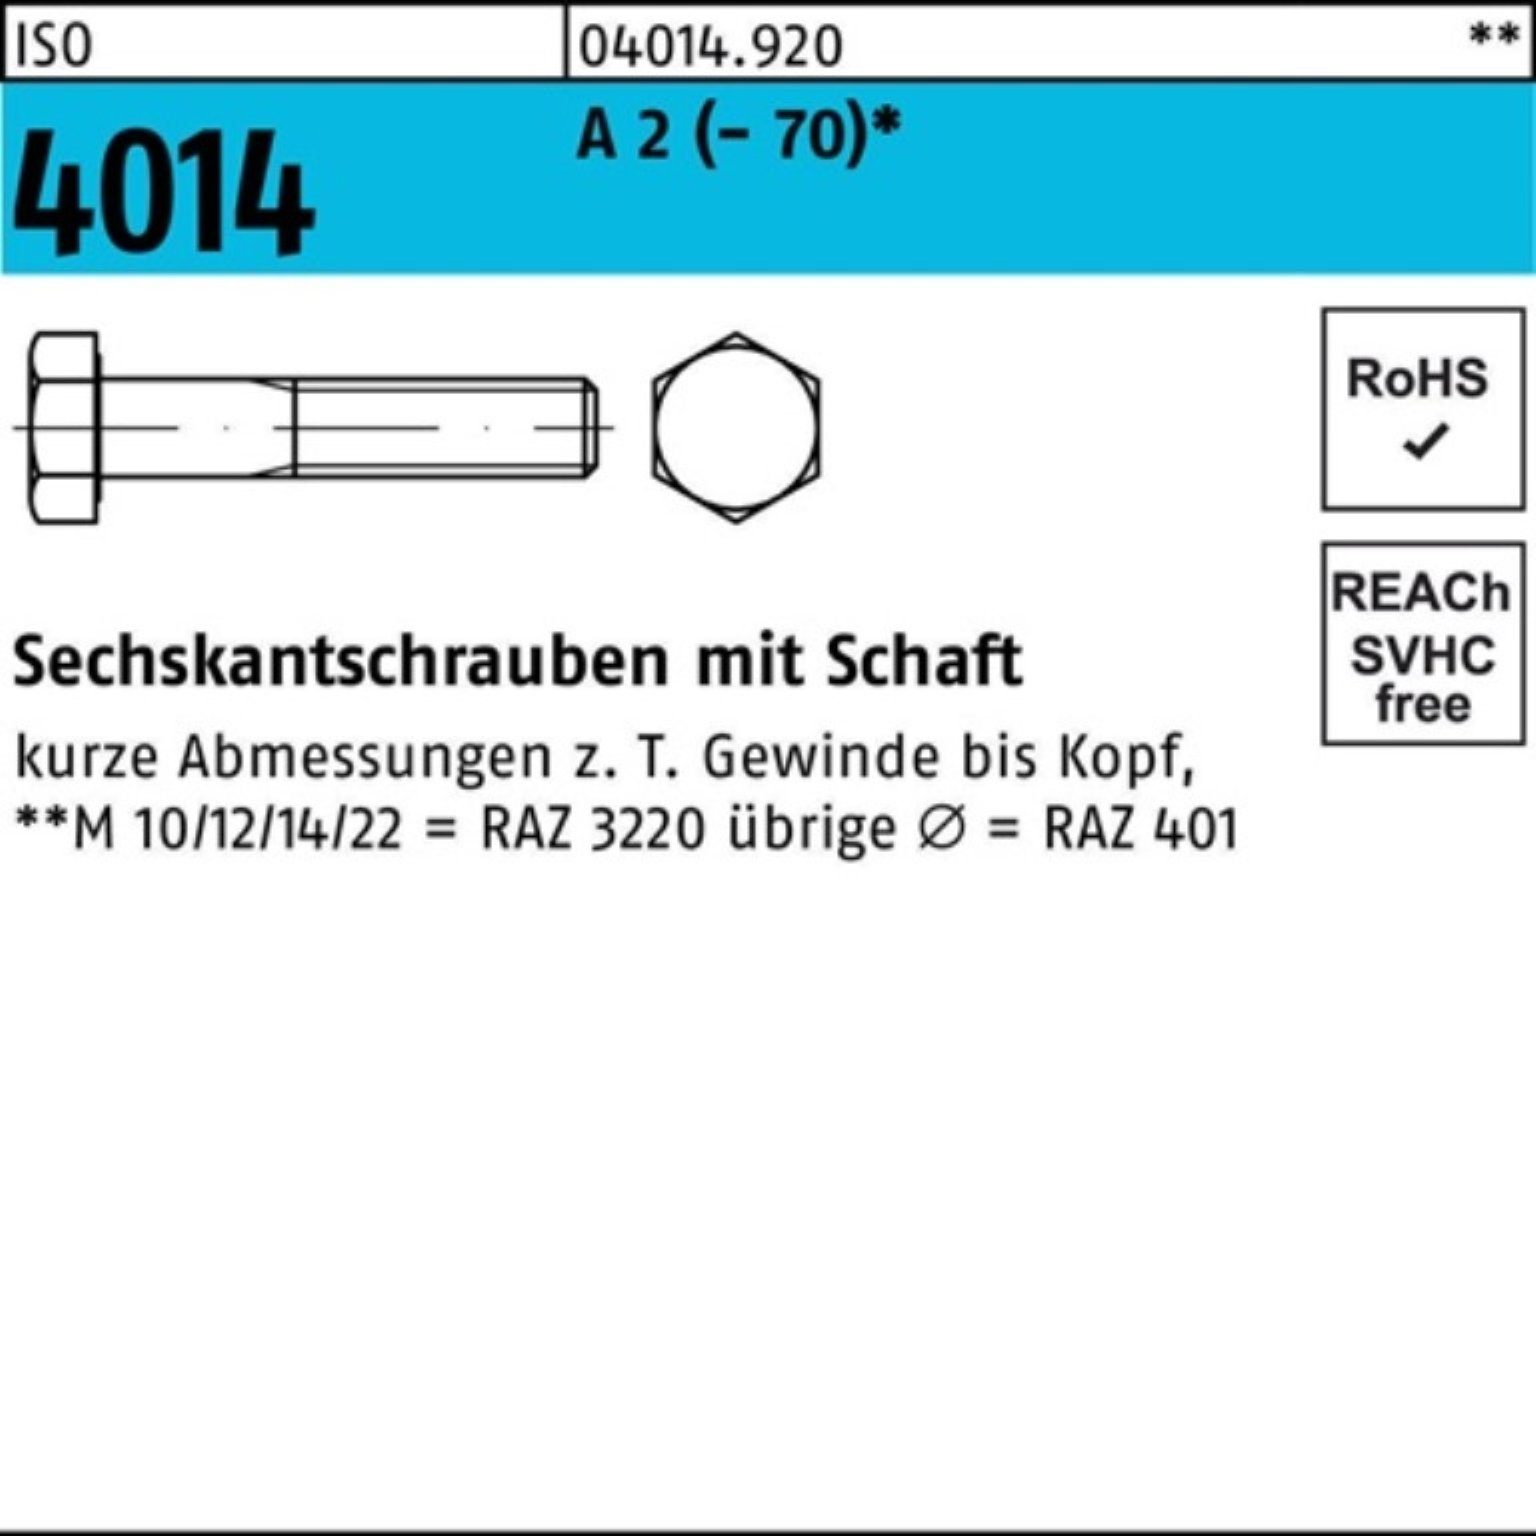 Bufab Sechskantschraube 100er Pack Sechskantschraube ISO 4014 Schaft M5x 50 A 2 (70) 100 St